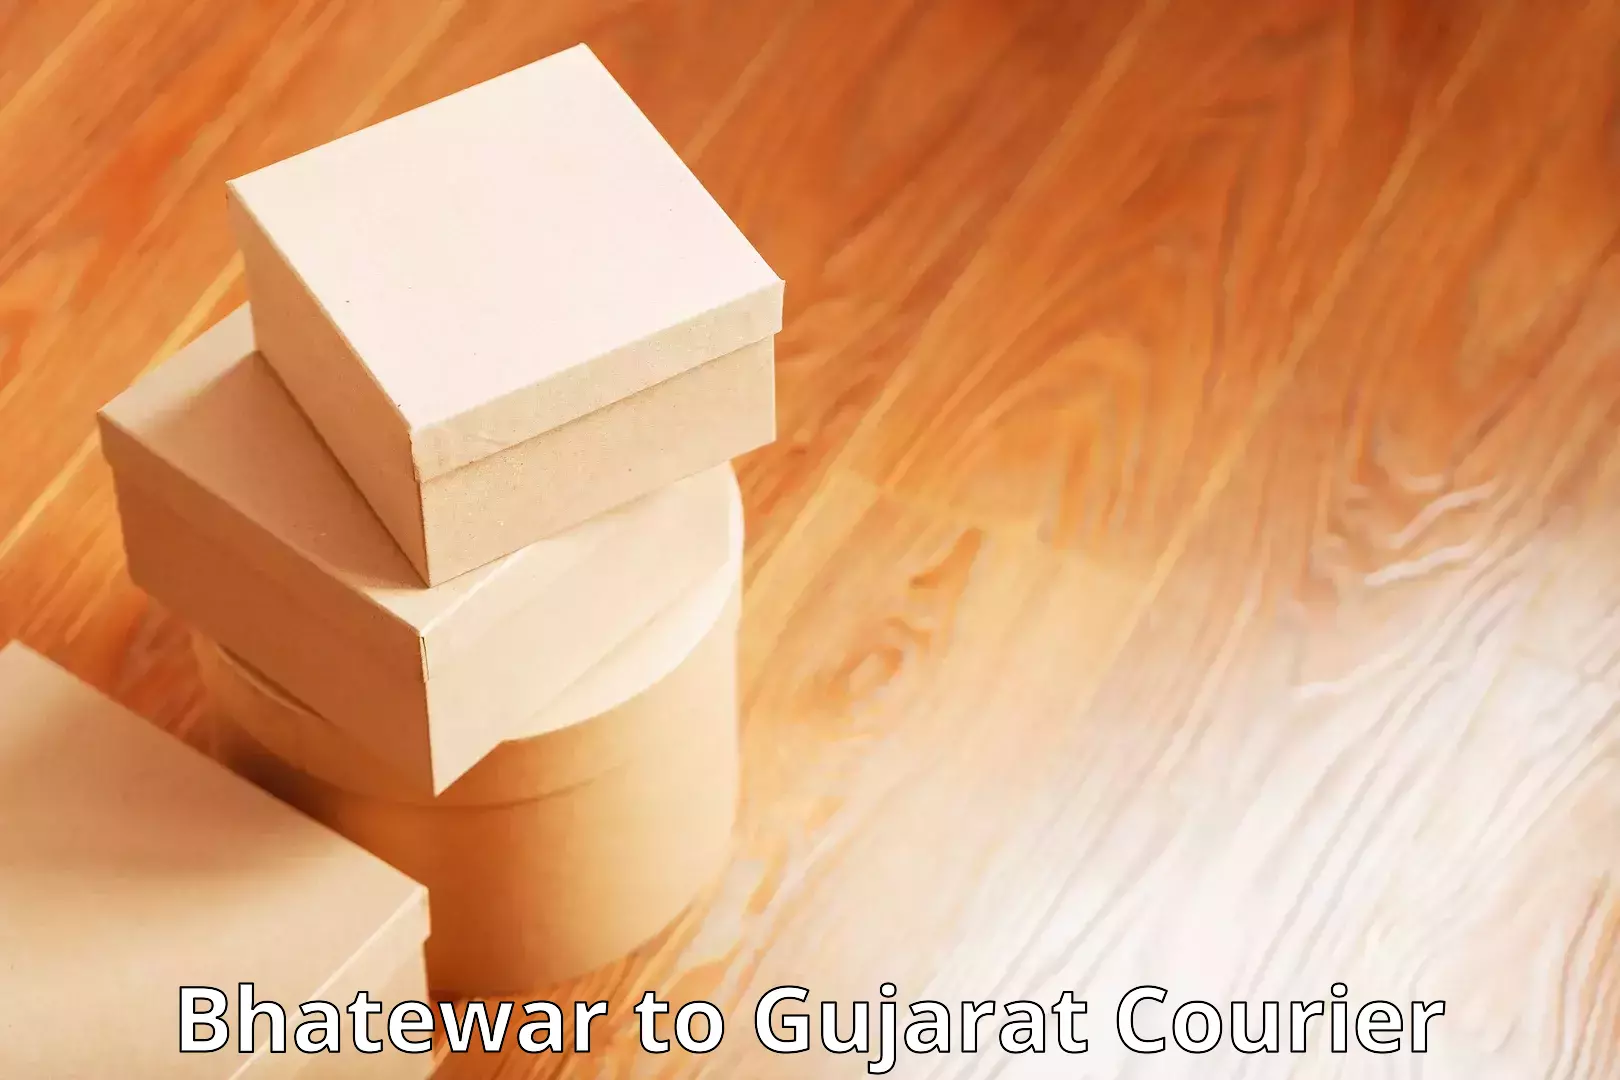 Next-generation courier services Bhatewar to Navrangpura